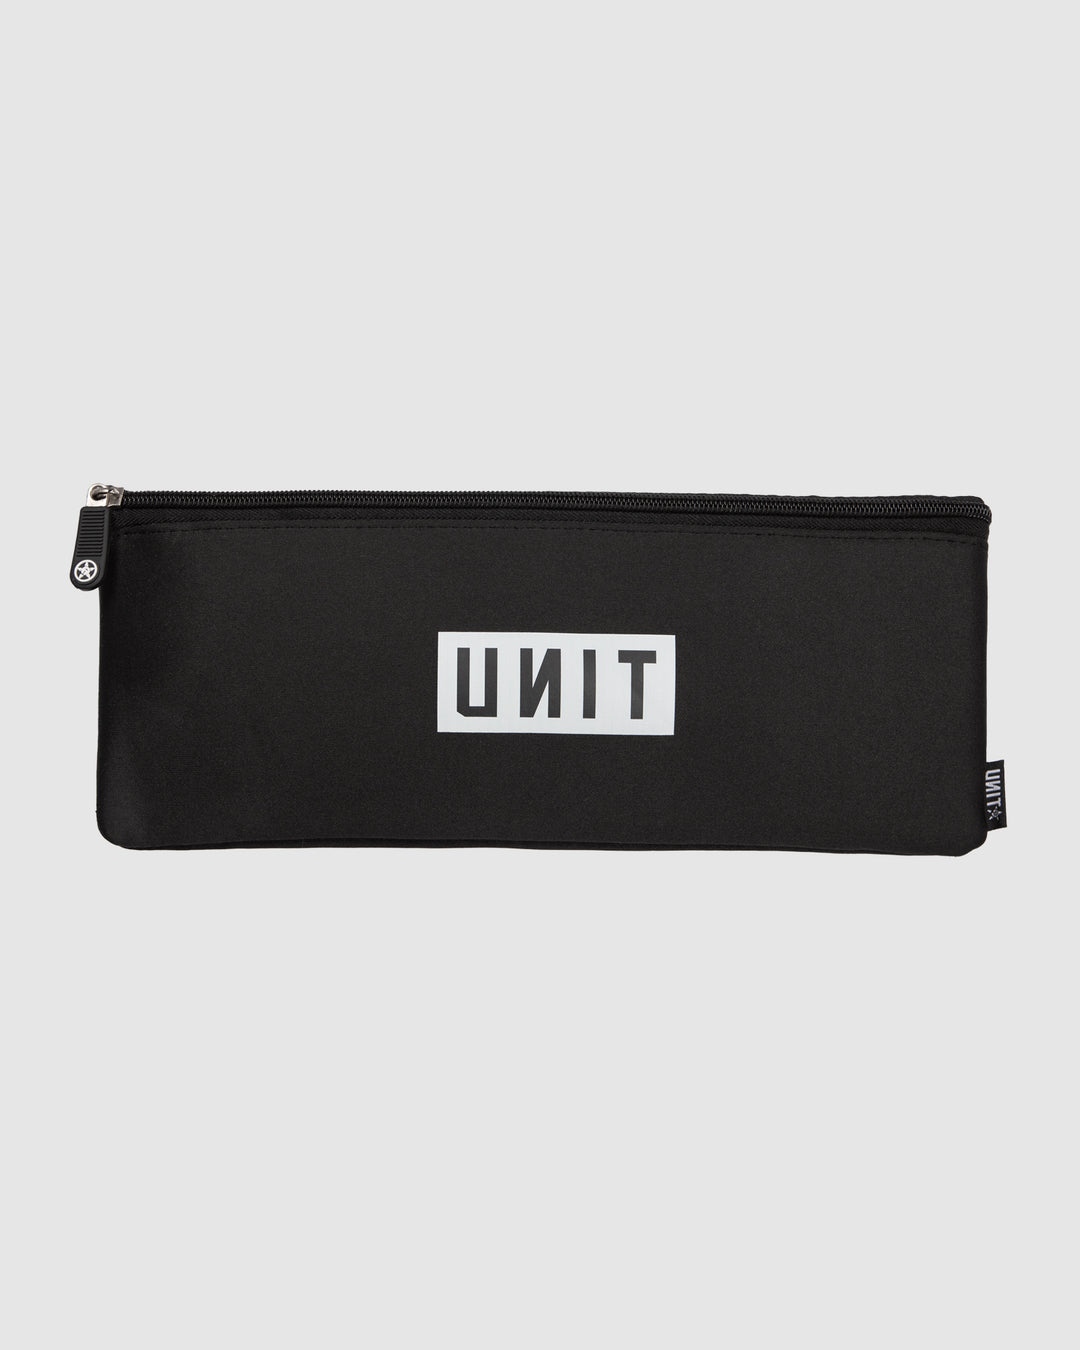 UNIT Original Pencil Case